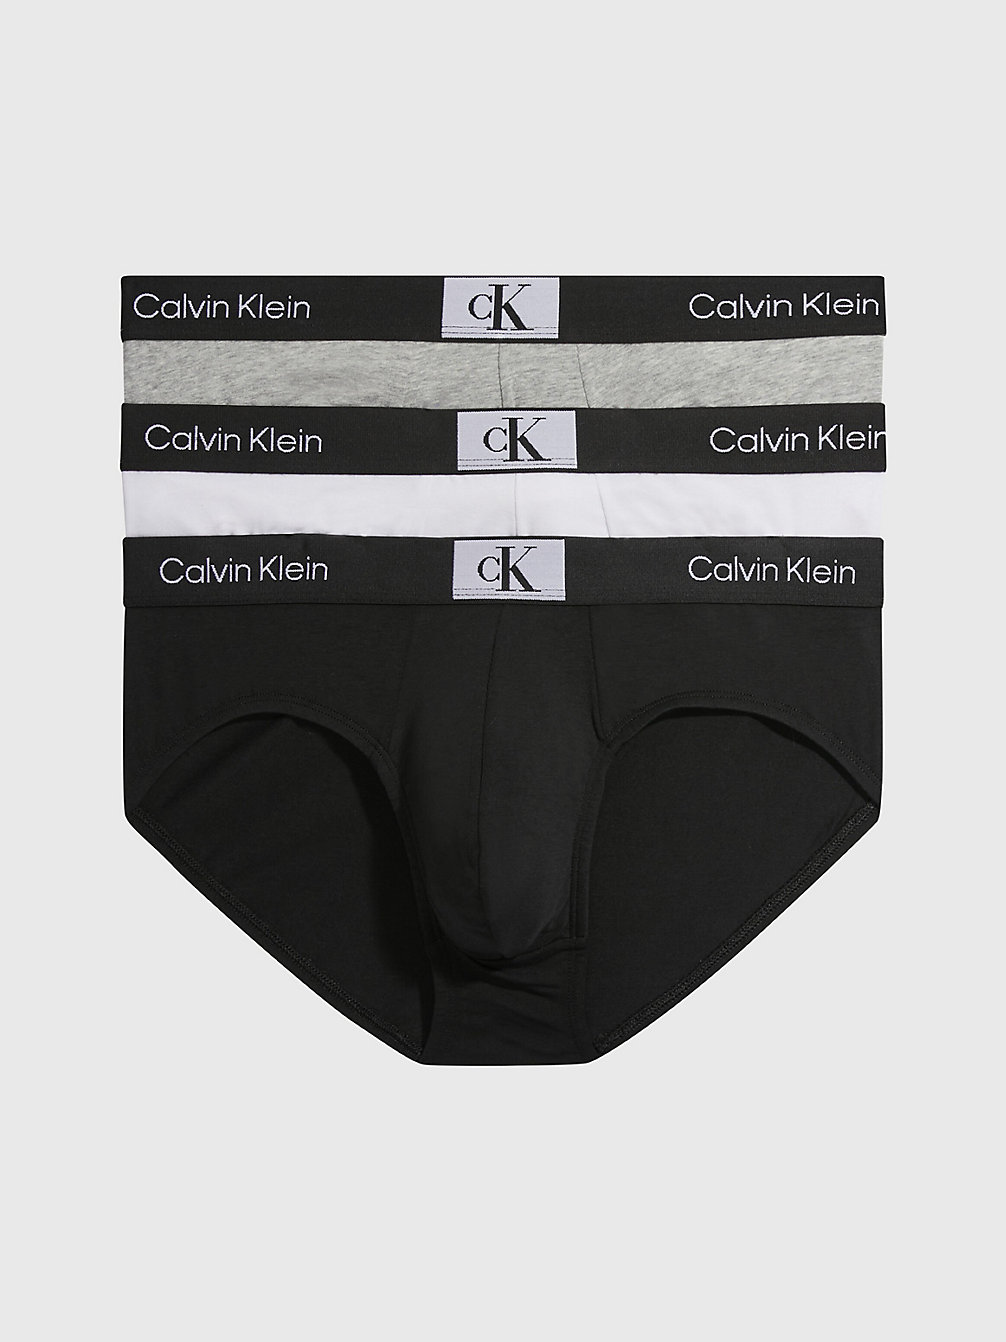 BLACK/WHITE/GREY HEATHER > Zestaw 3 Par Slipów - Ck96 > undefined Mężczyźni - Calvin Klein